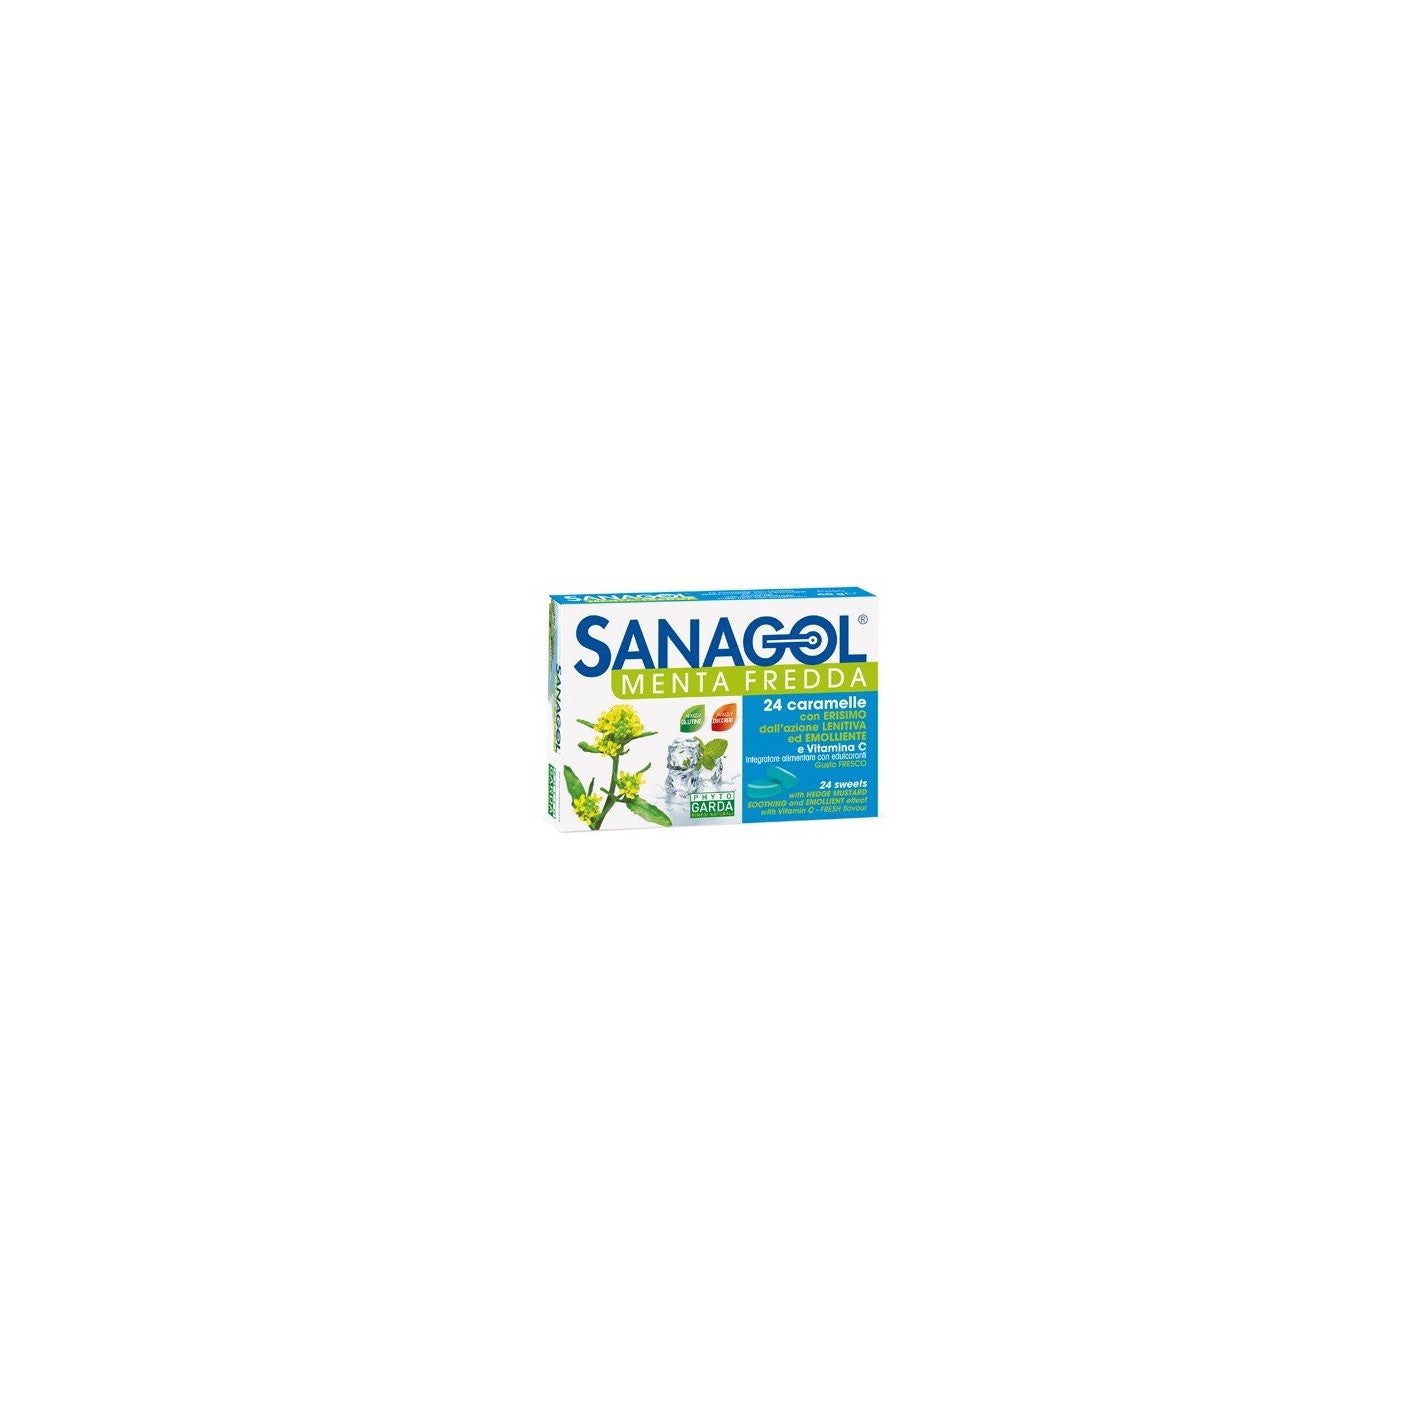 Bomboane de supt pentru gat, Sanagol Menta Fredda, 24 comprimate, Phyto Garda - 8051490300677